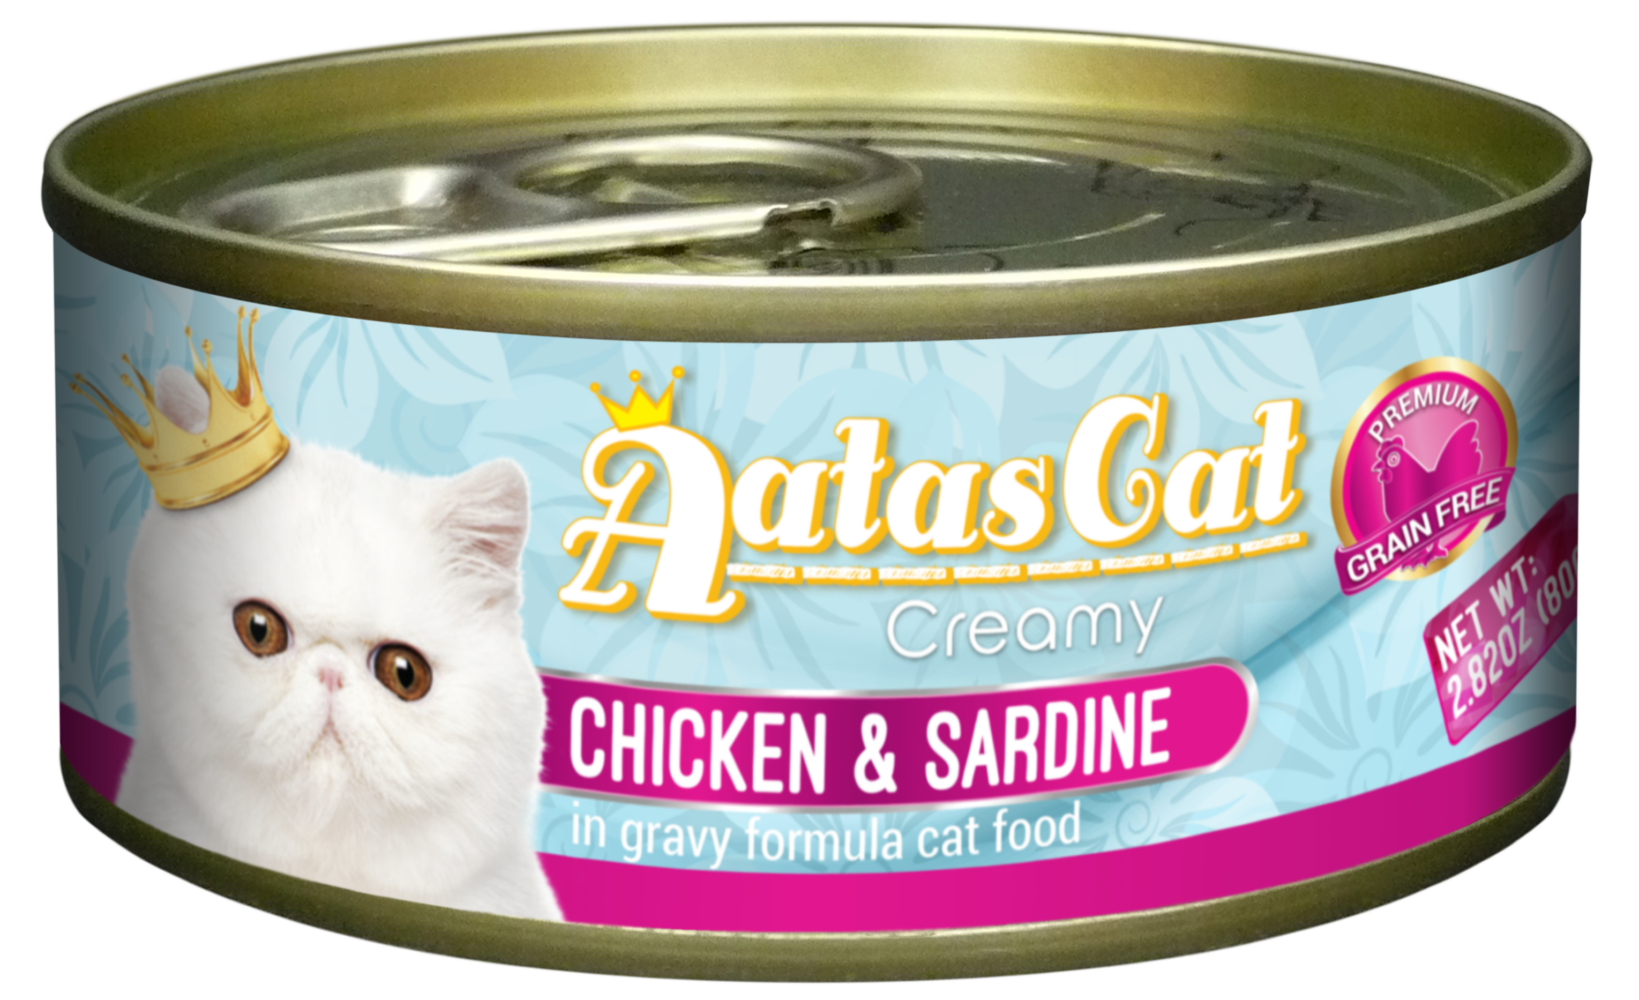 Aatas Cat Creamy Chicken & Sardine in Gravy 80g